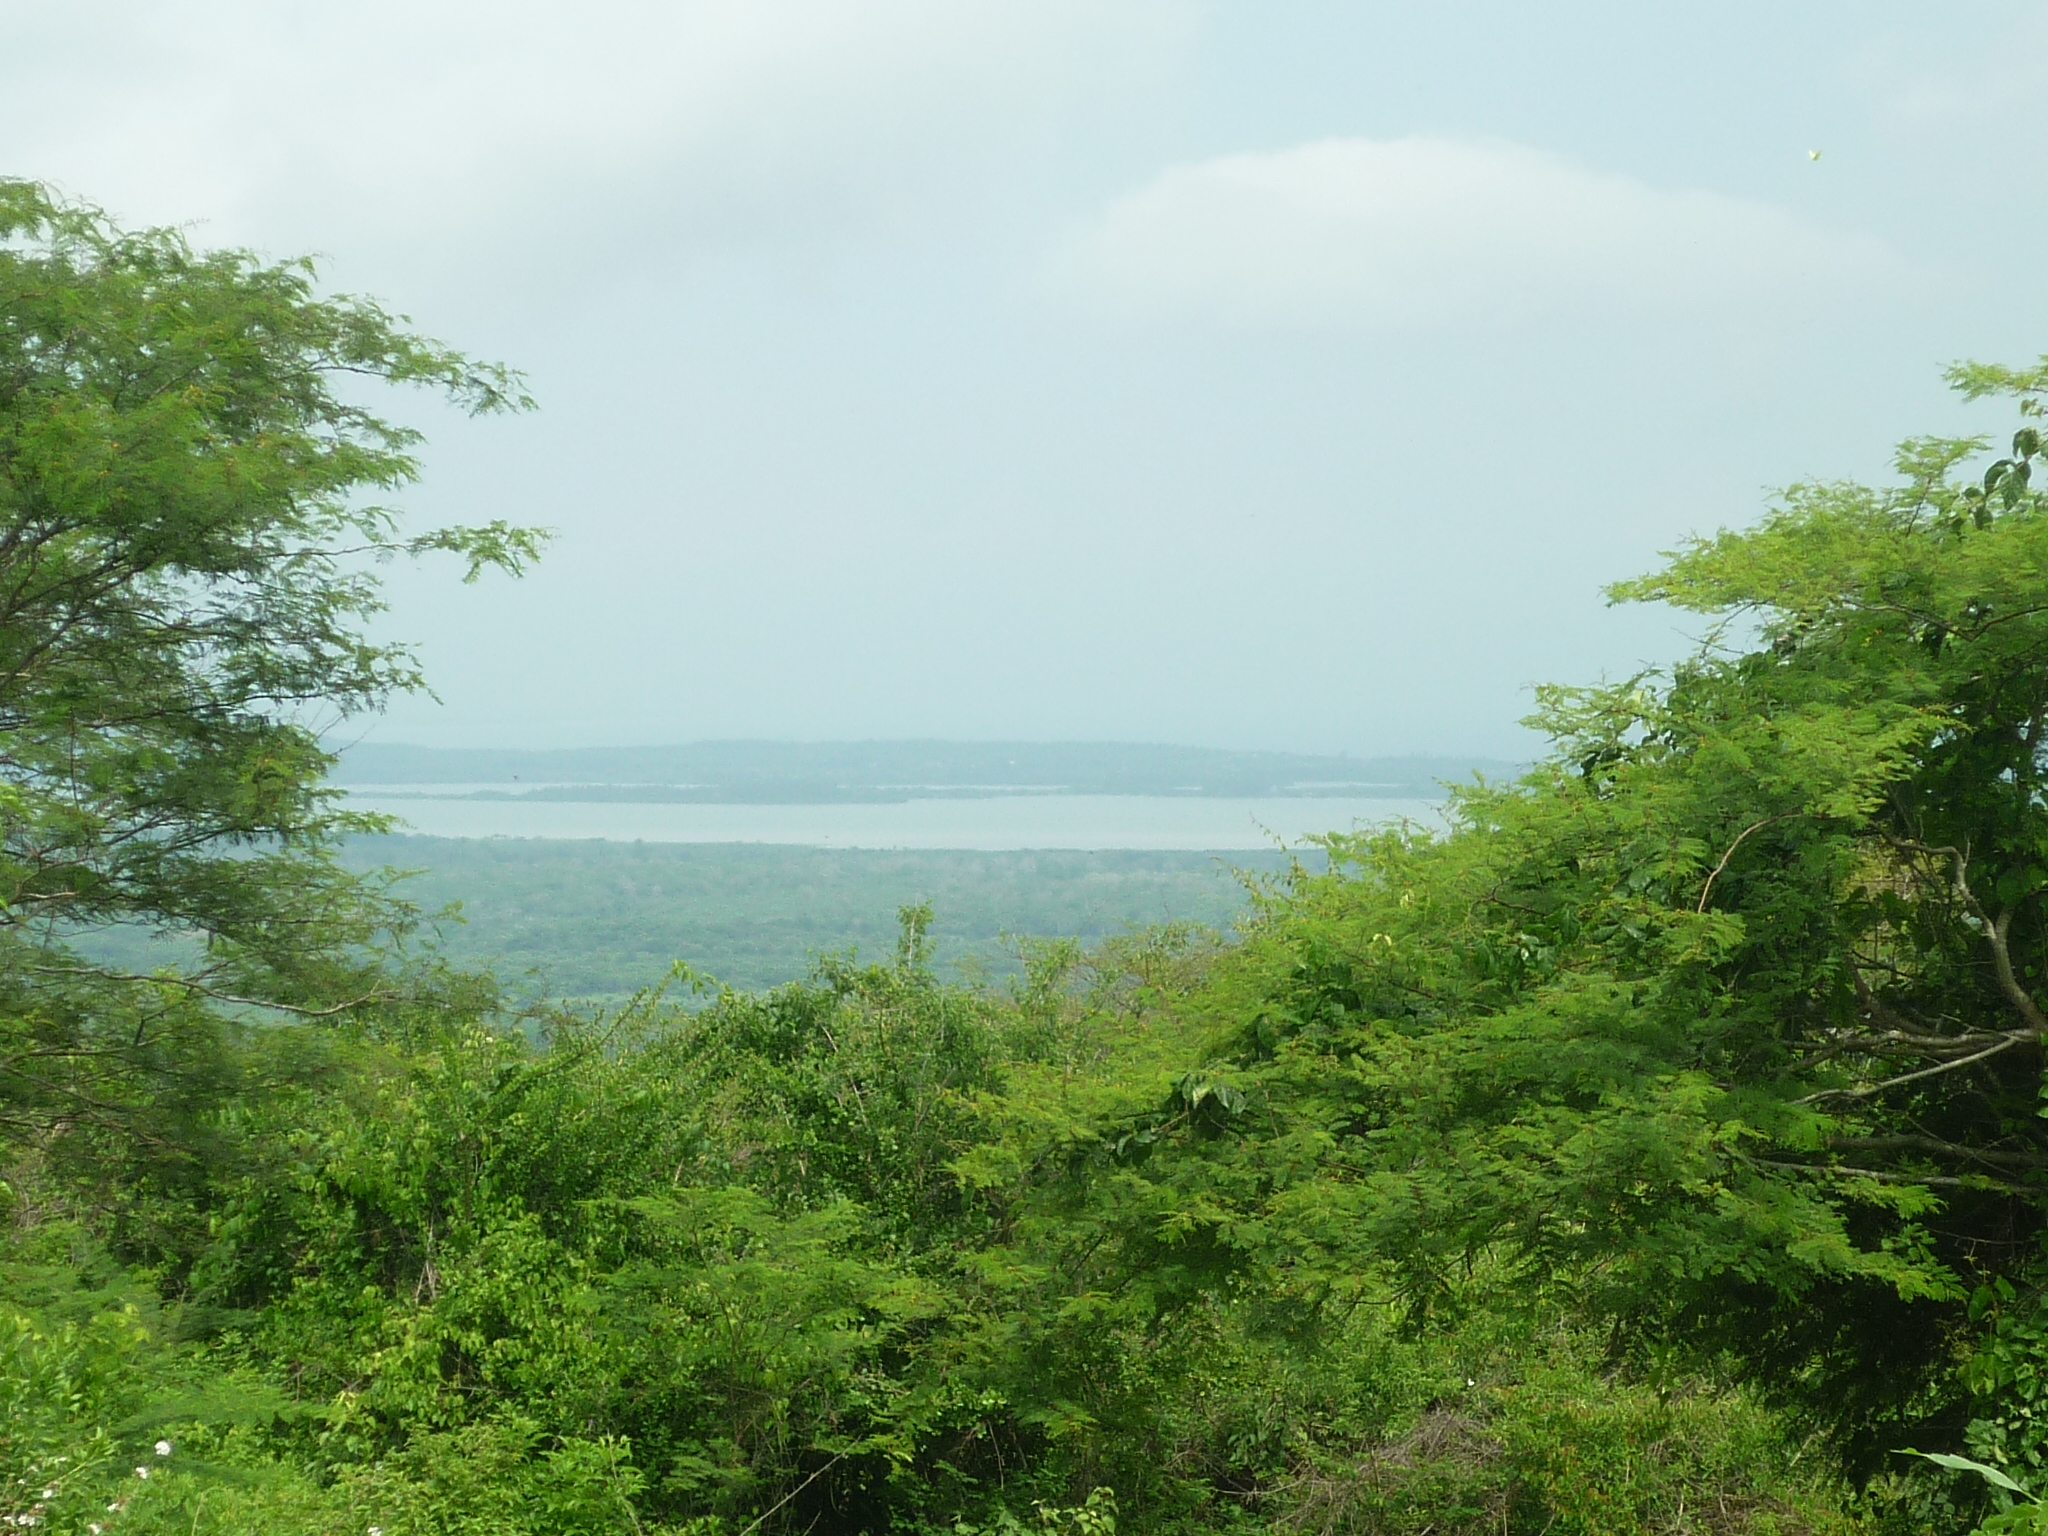 1.900.000 hectáreas en áreas protegidas y corredores biológicos para el Caribe Colombiano